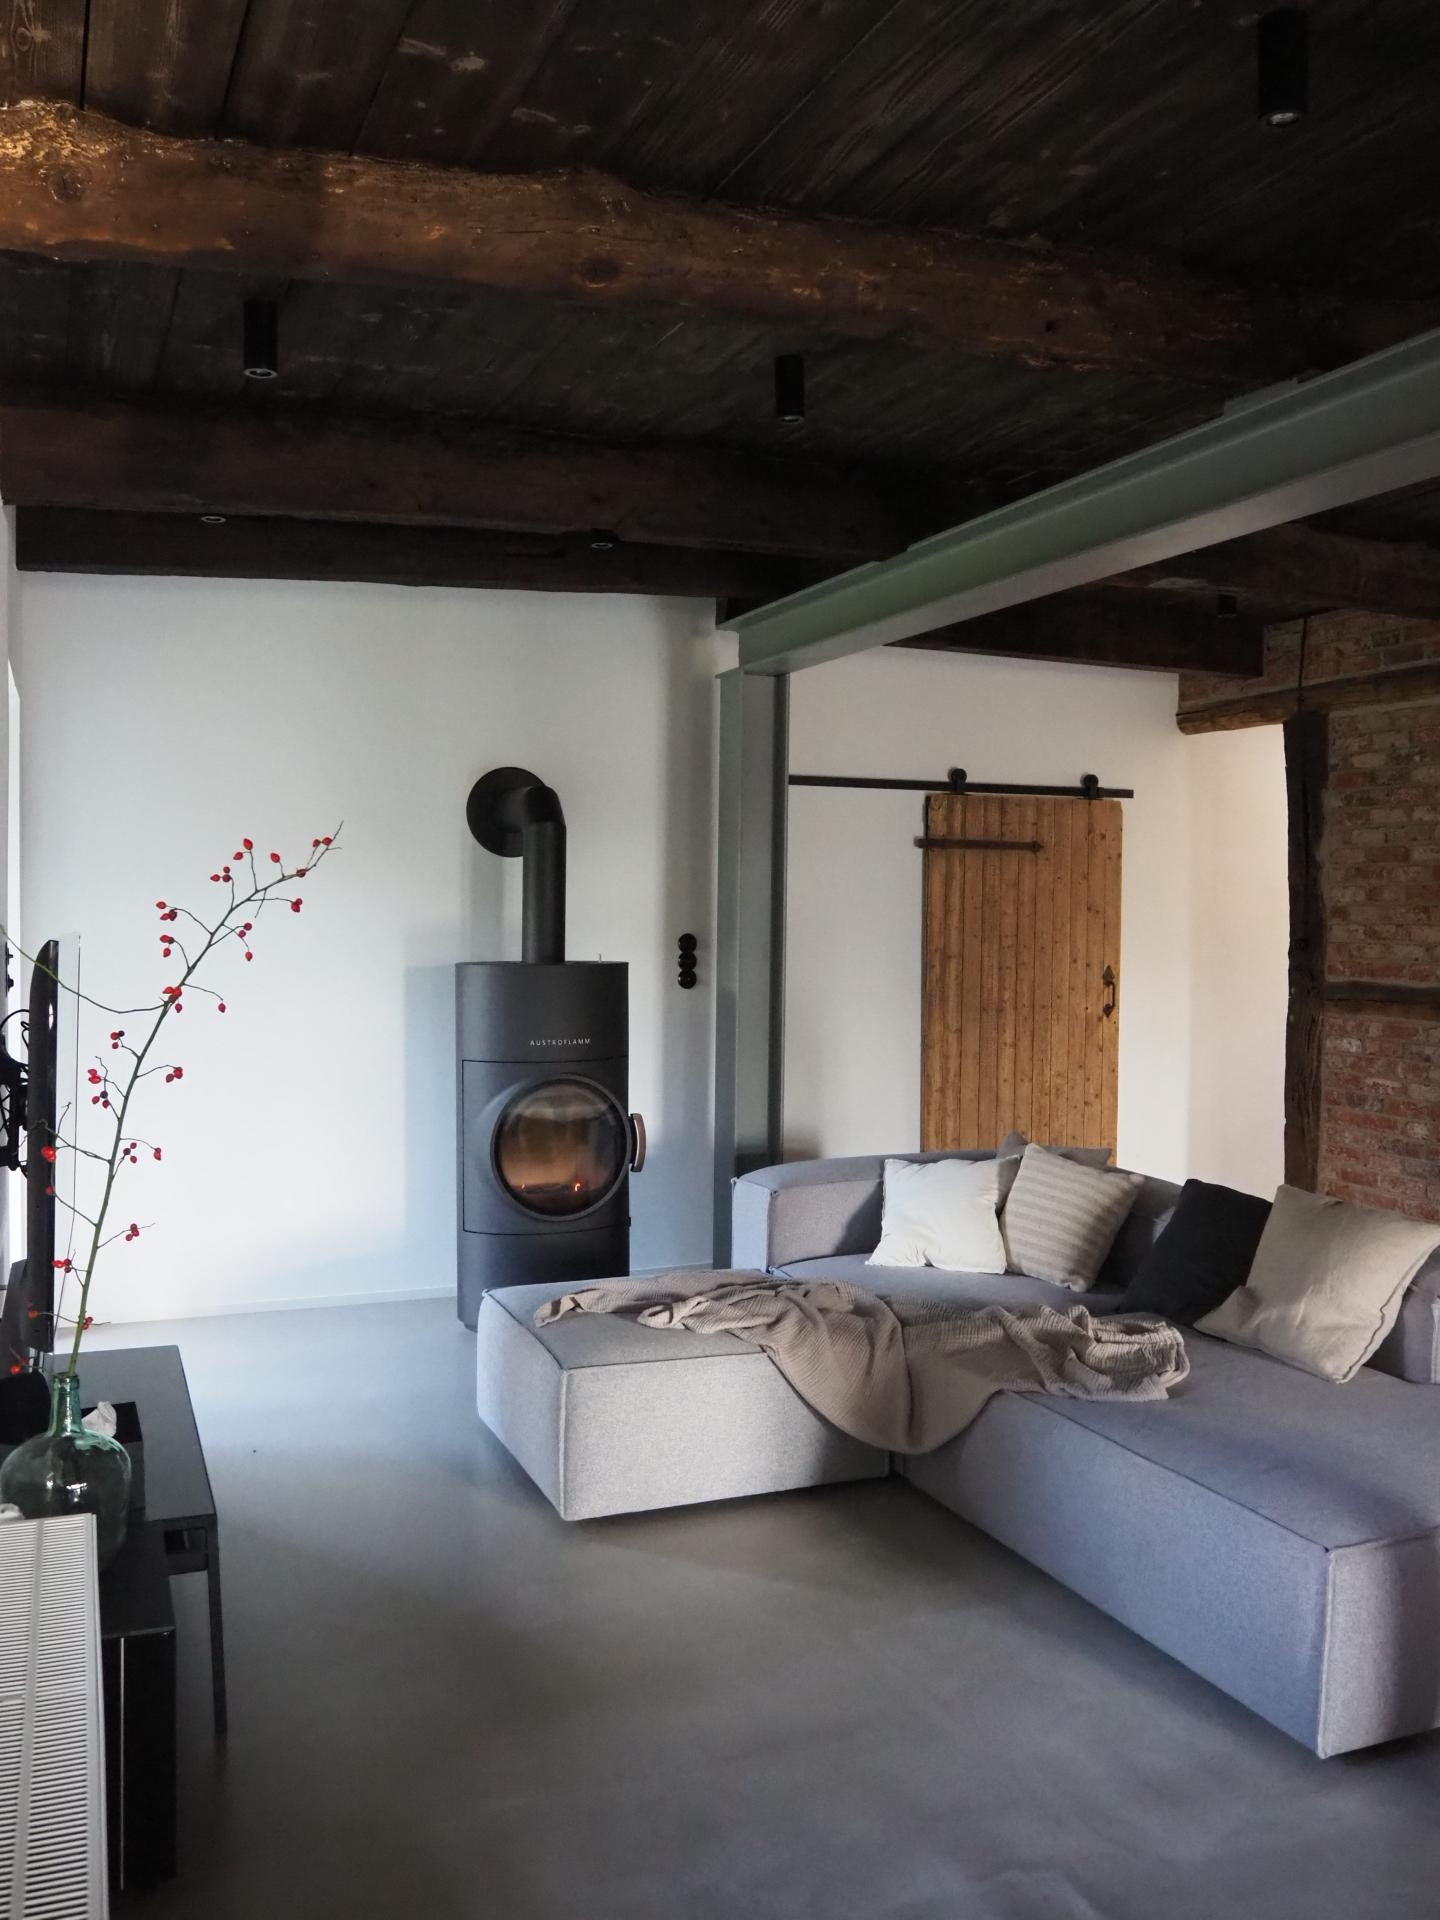 Große Wohnzimmerliebe
#wohnzimmer #sofa #couch #altbau